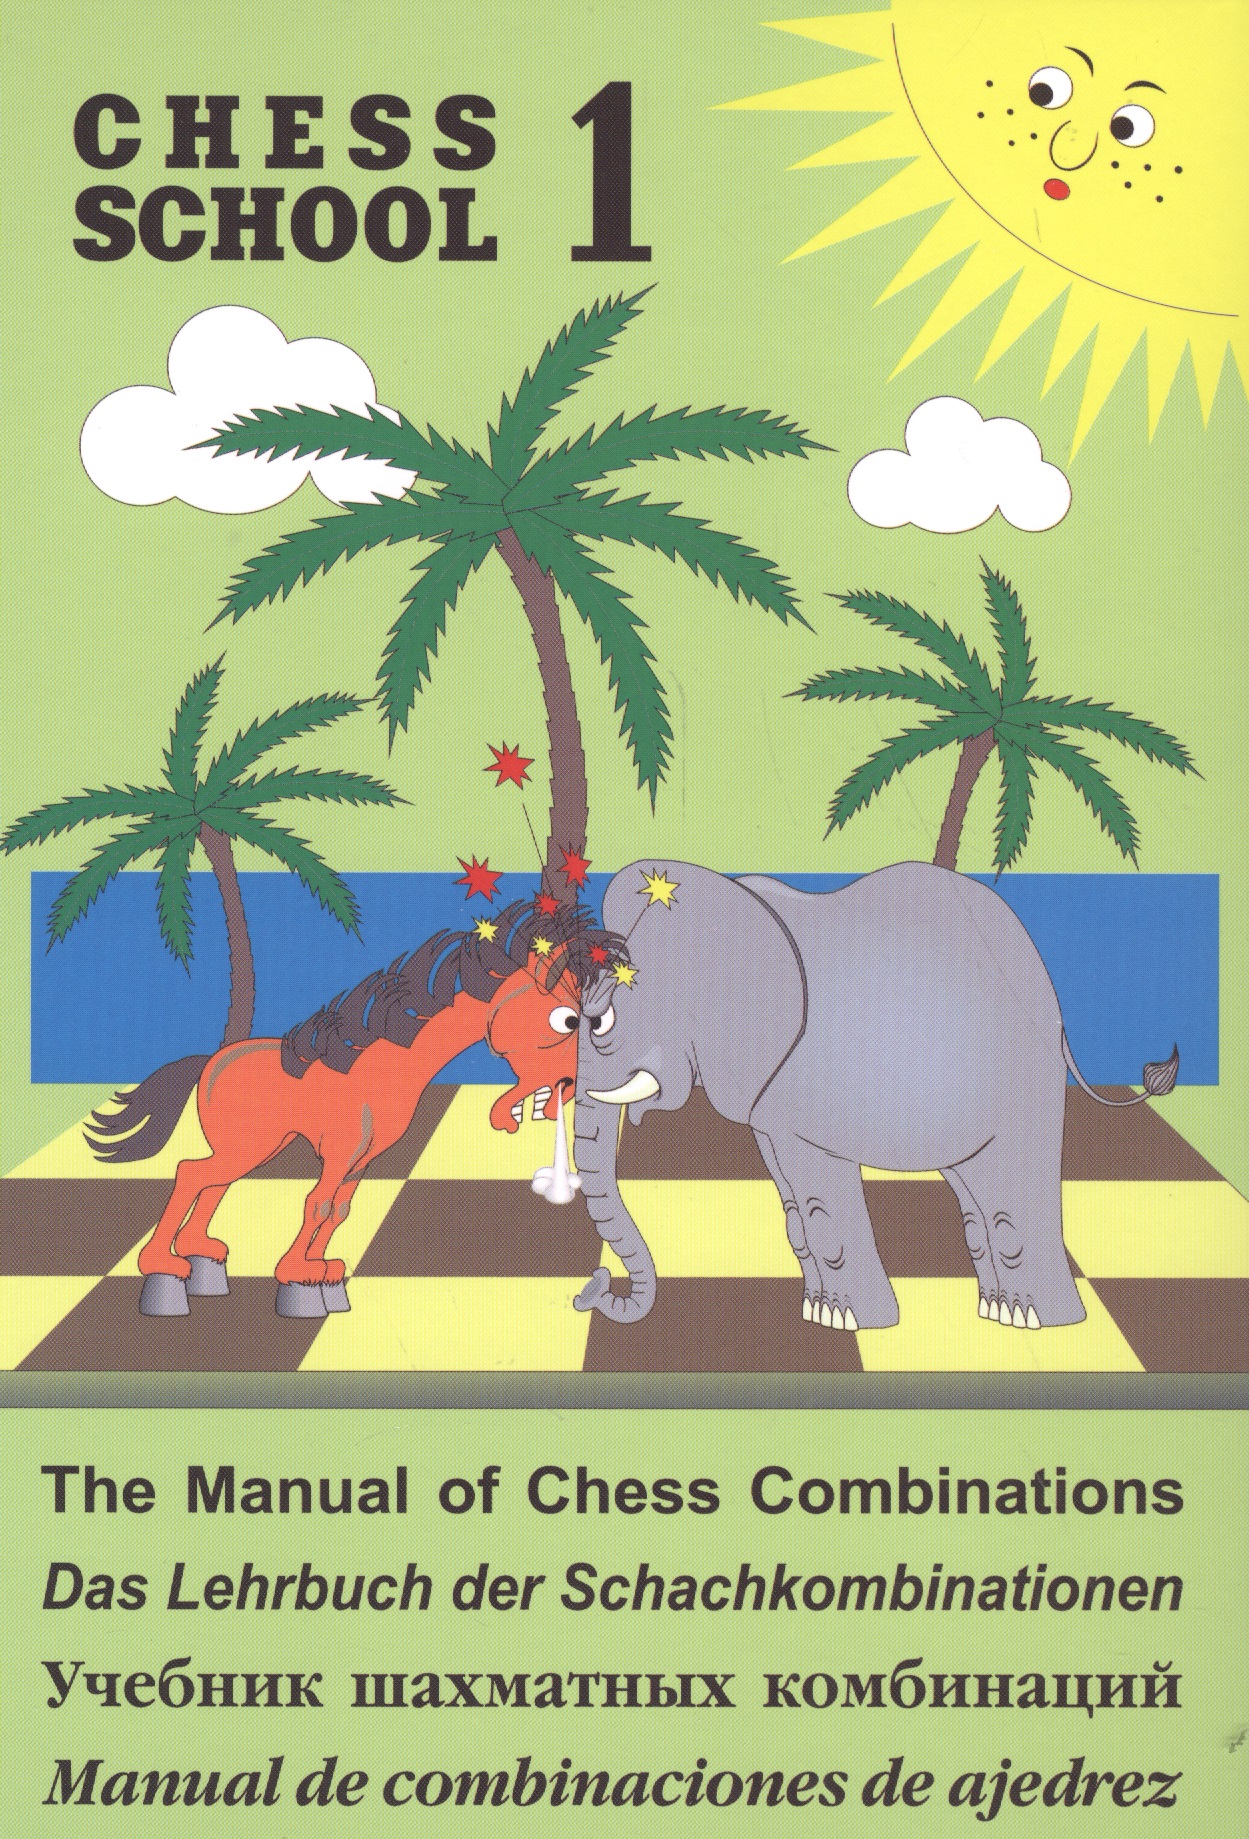 Иващенко Валерий Владимирович Учебник шахматных комбинаций. Том 1 (Chess school